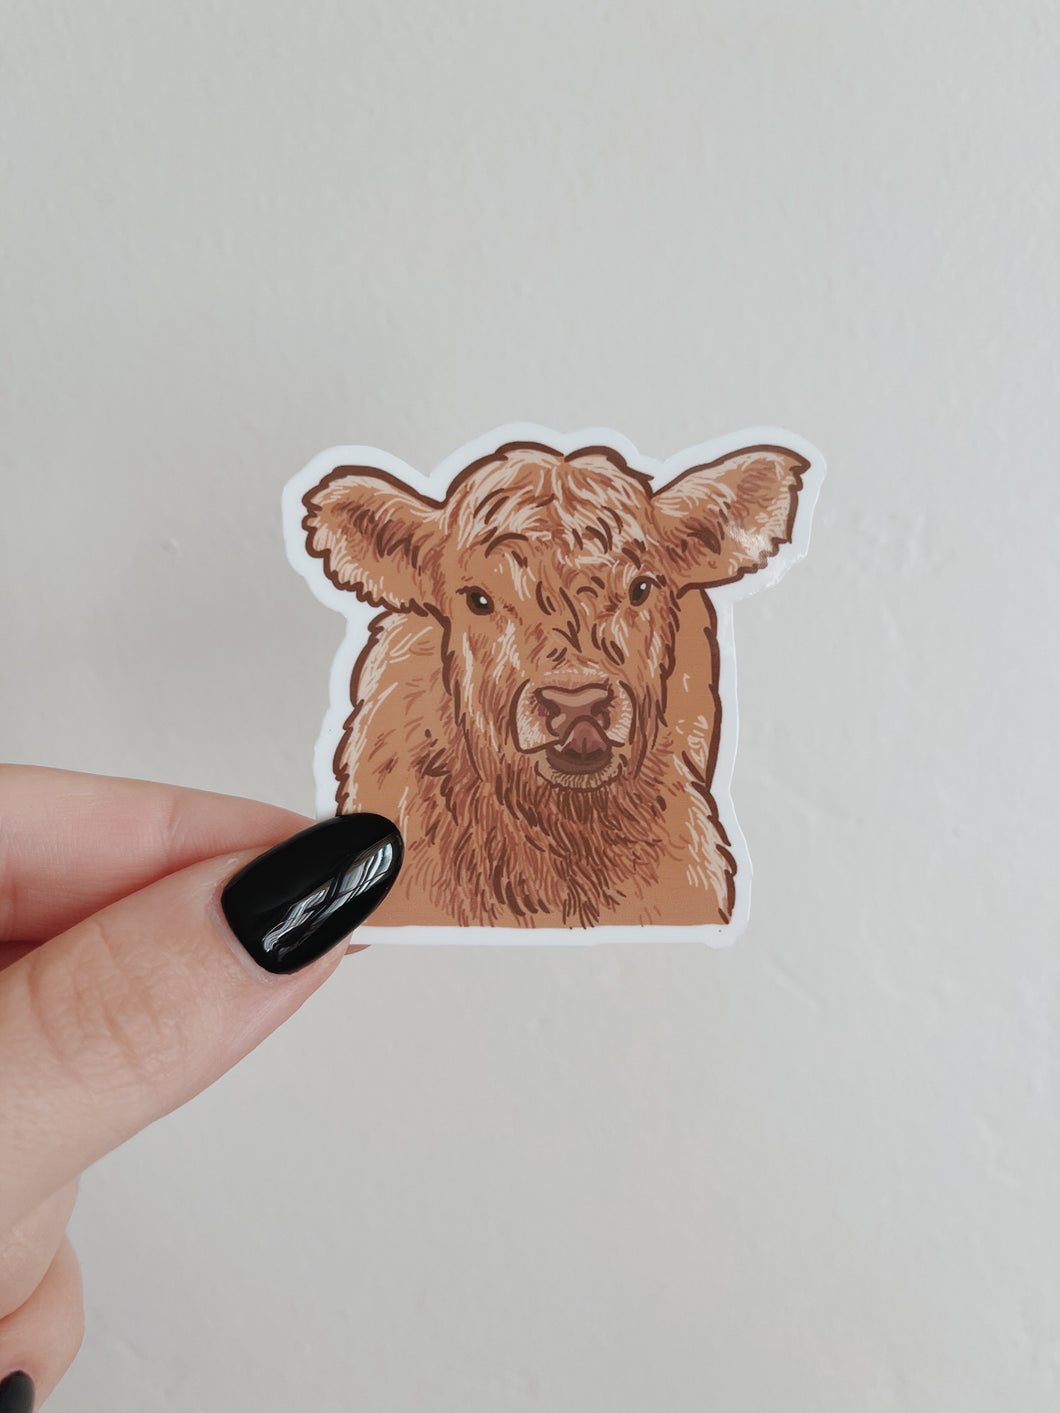 Baby Highland Cow Sticker